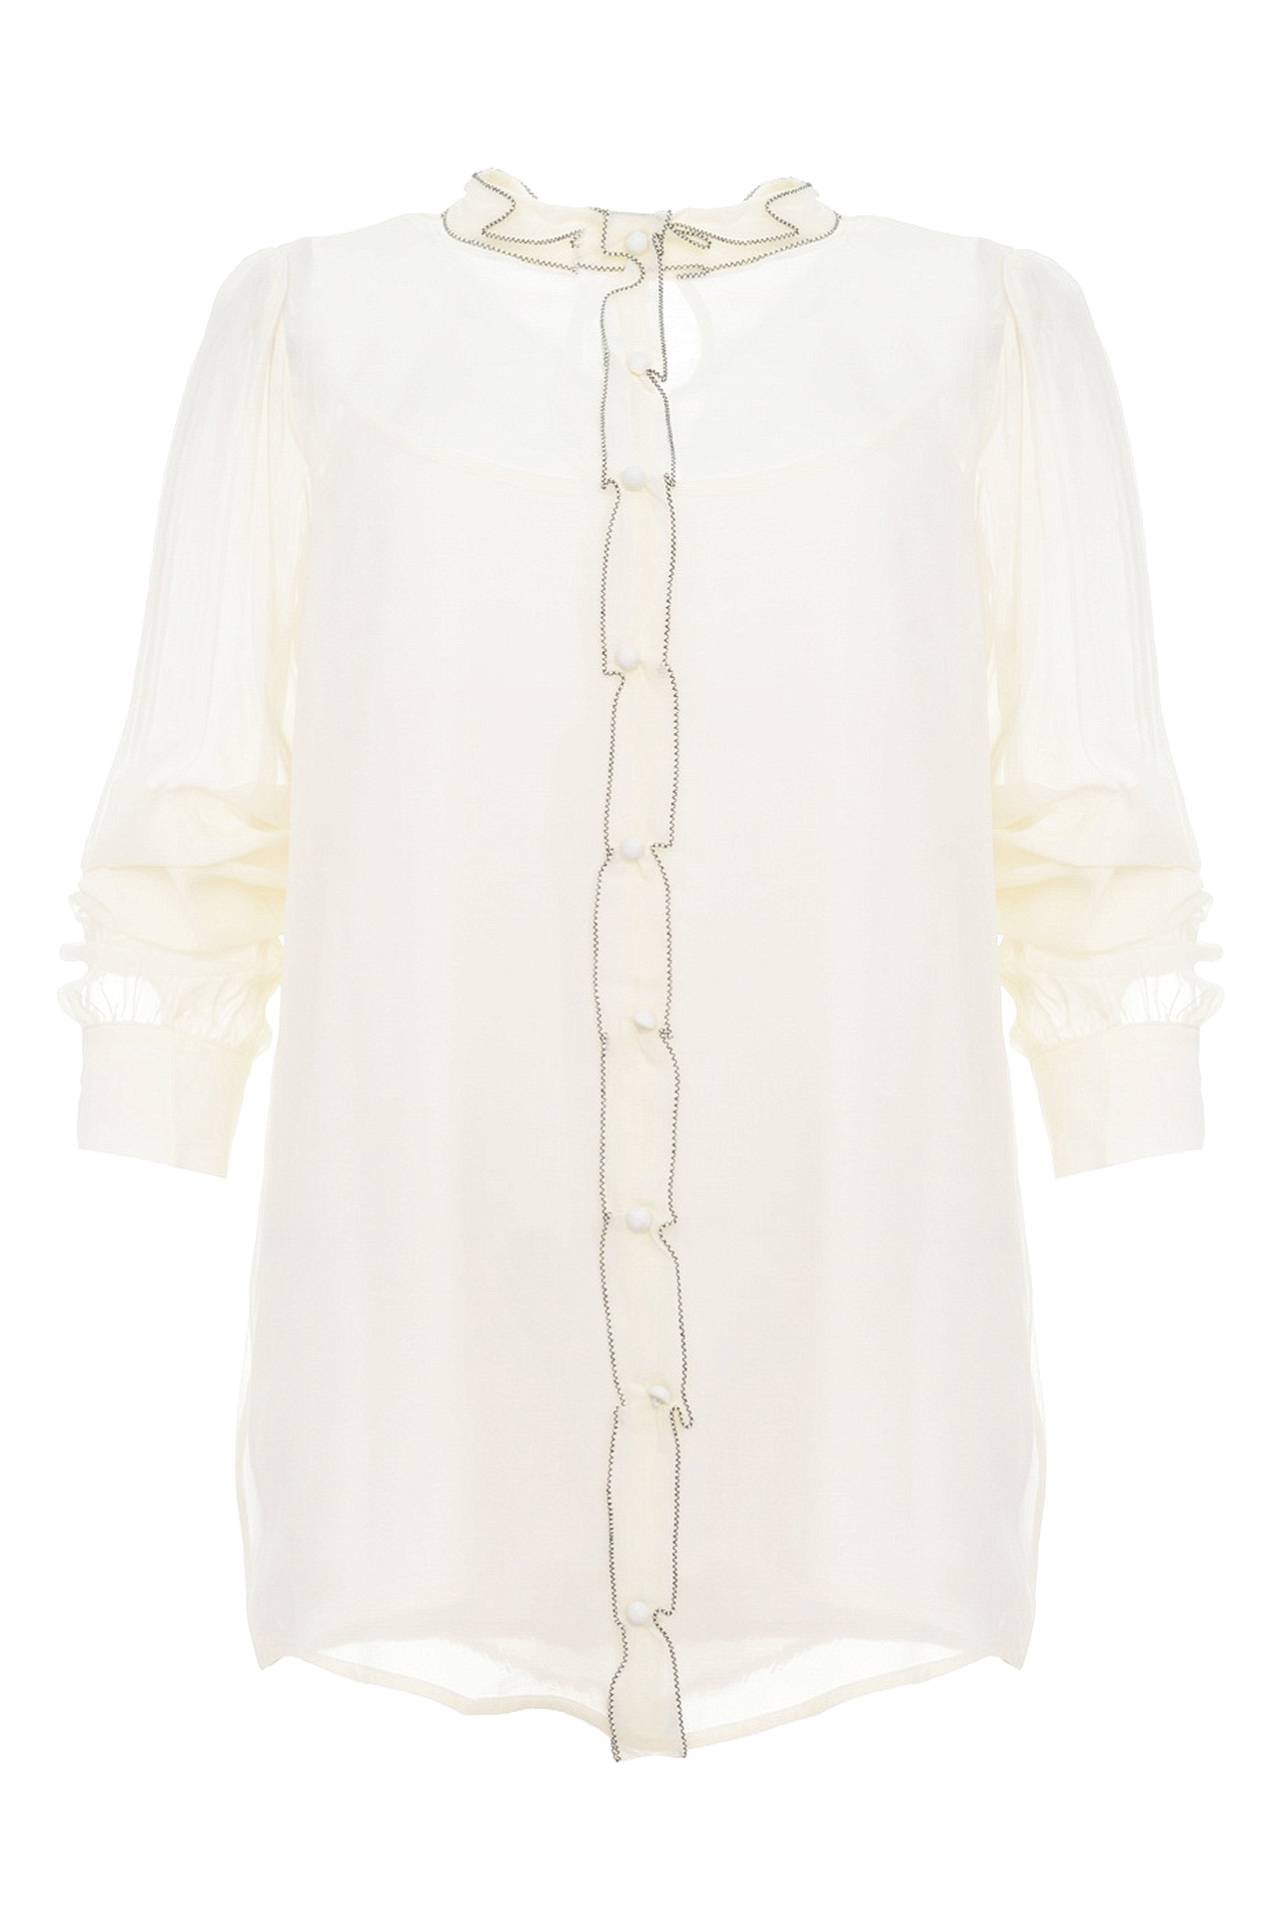 Одежда женская Блузка TWIN-SET (P2A41A/15.1). Купить за 9520 руб.